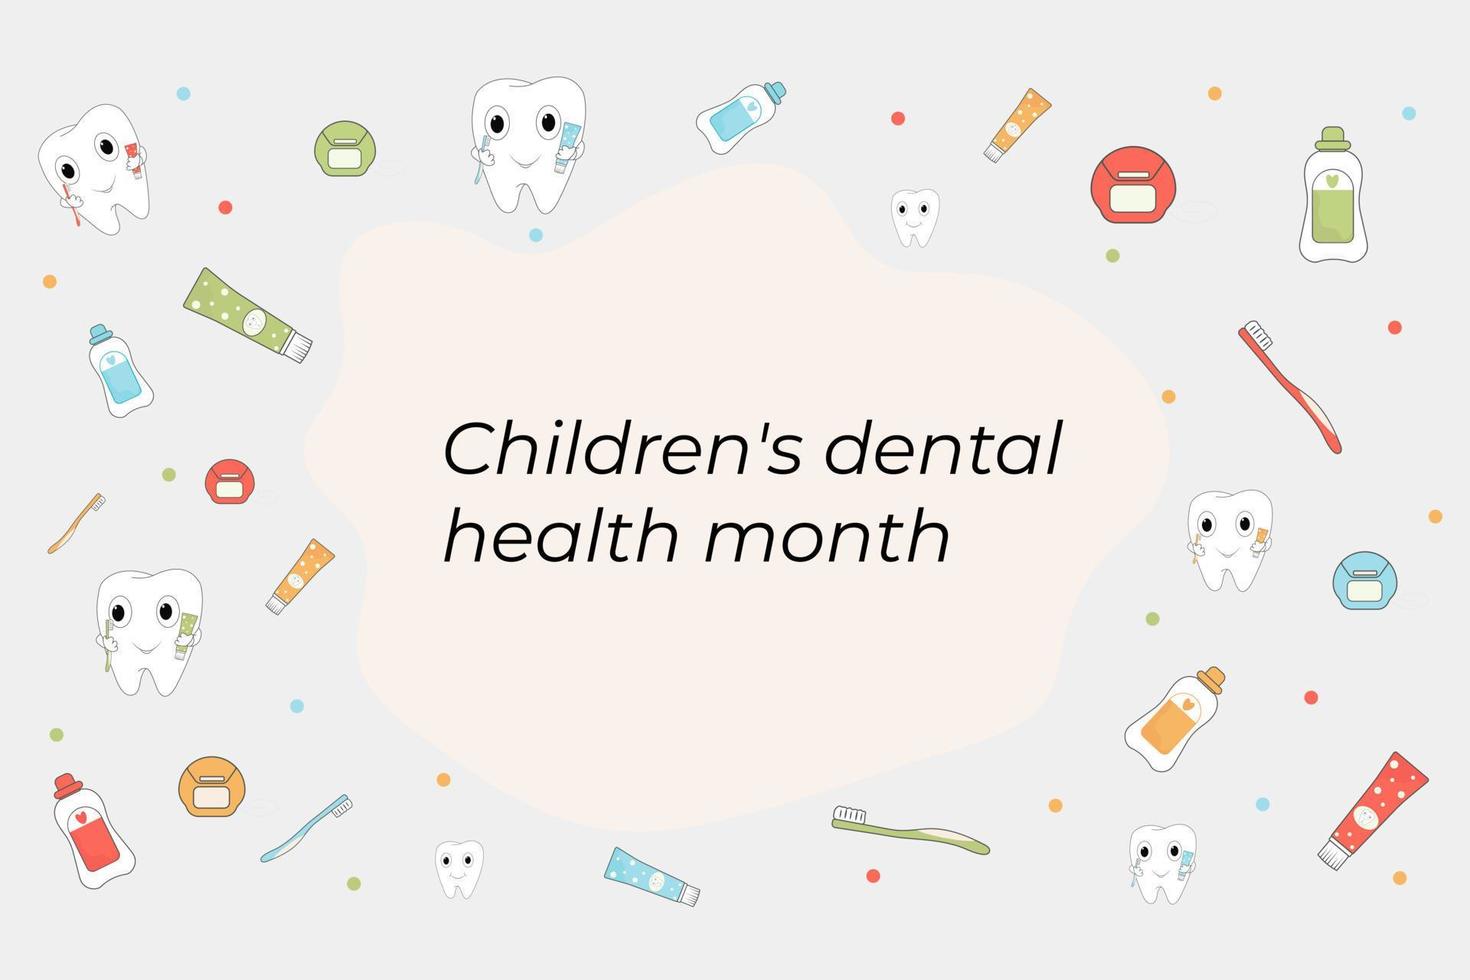 mes nacional de la salud dental infantil.salud dental infantil vector